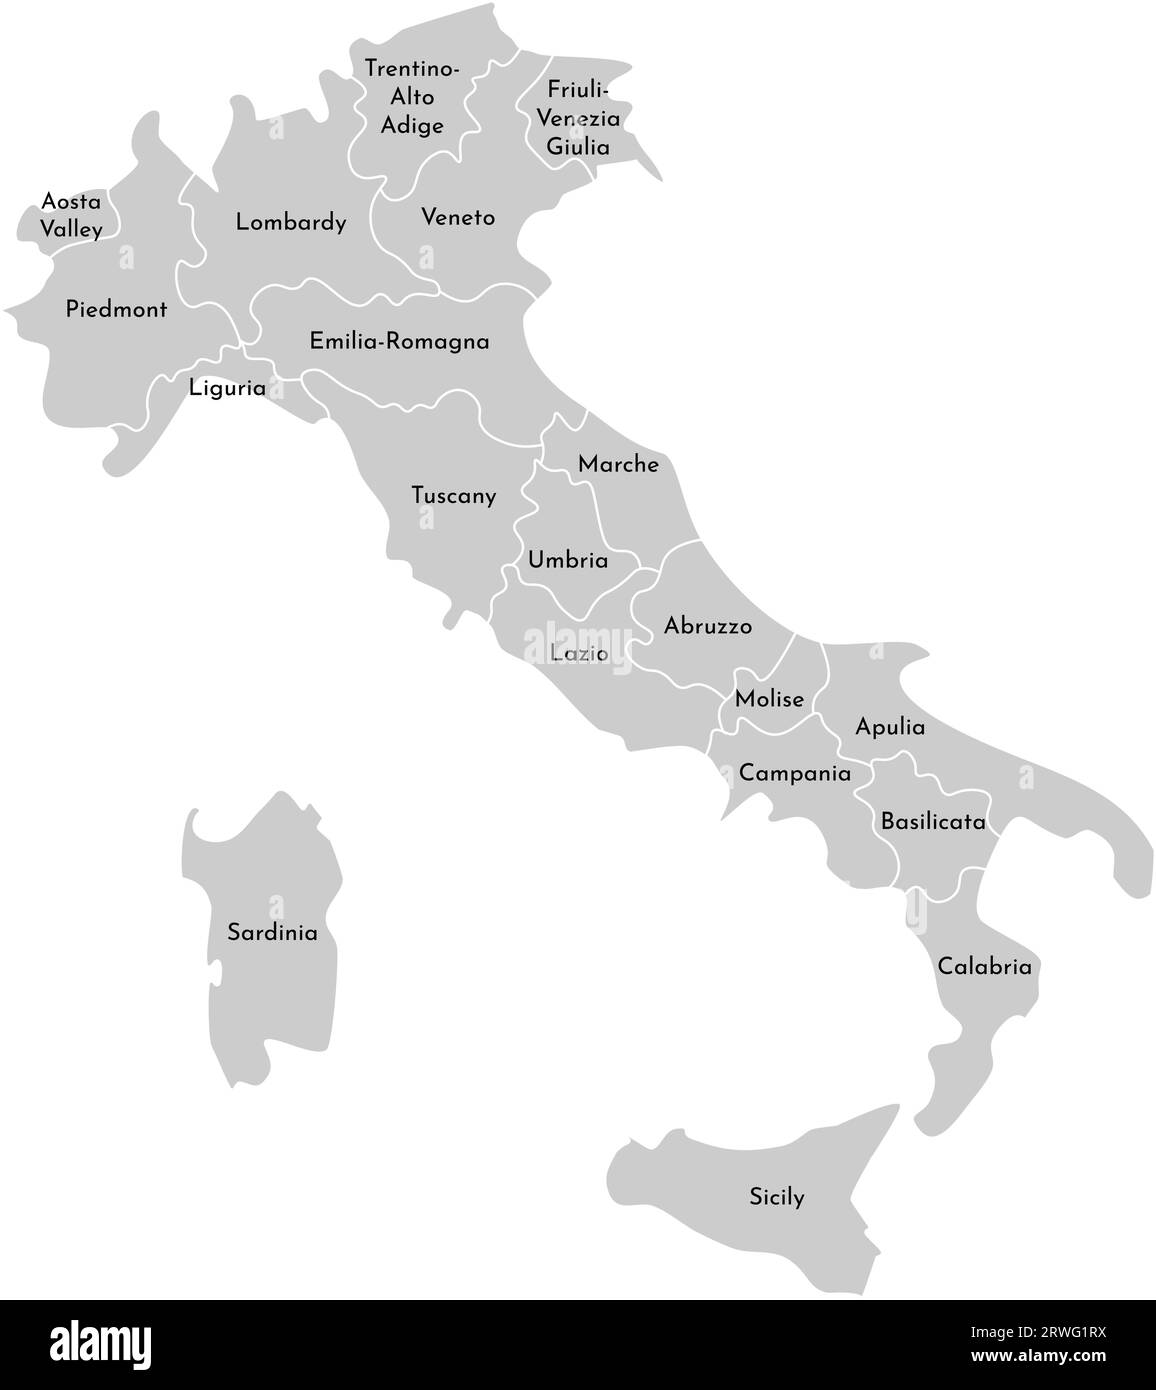 Illustrazione vettoriale isolata della mappa amministrativa semplificata dell'Italia. Confini e nomi delle province (regioni). Silhouette grigie. Contorno bianco. Illustrazione Vettoriale